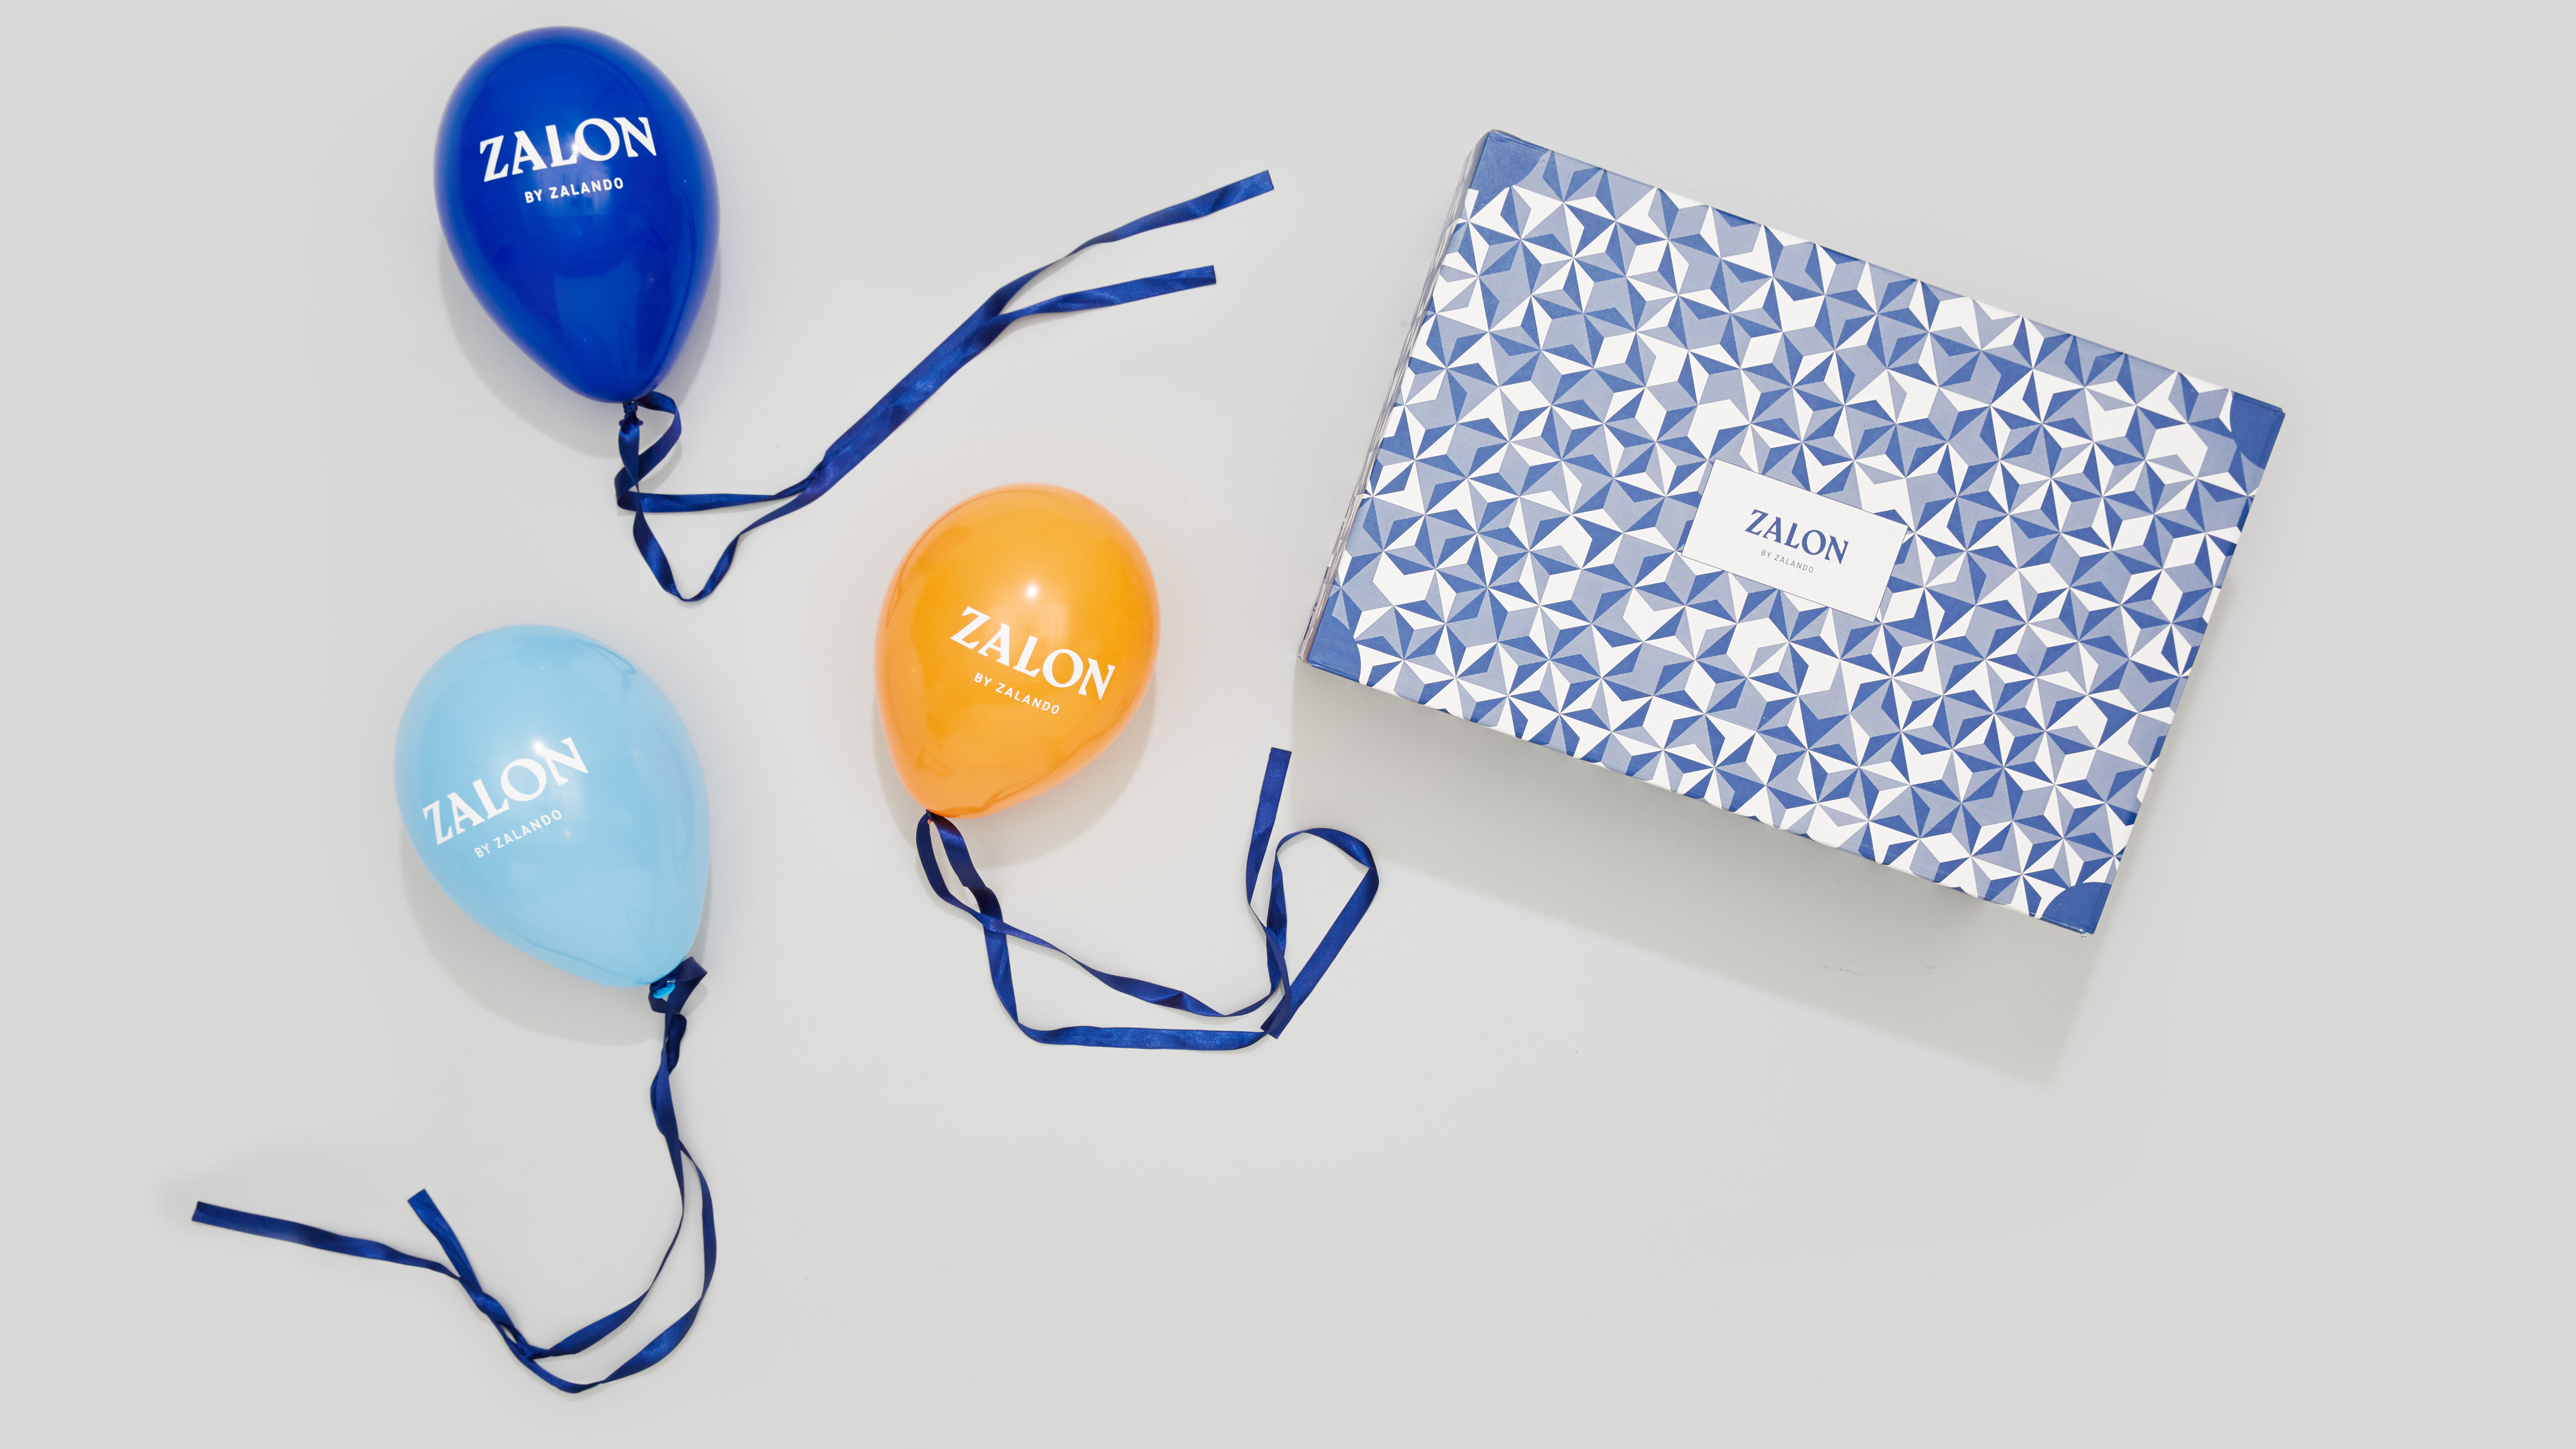 Zalando-SE_Newsroom_Stories_Zalon 3 years_balloons